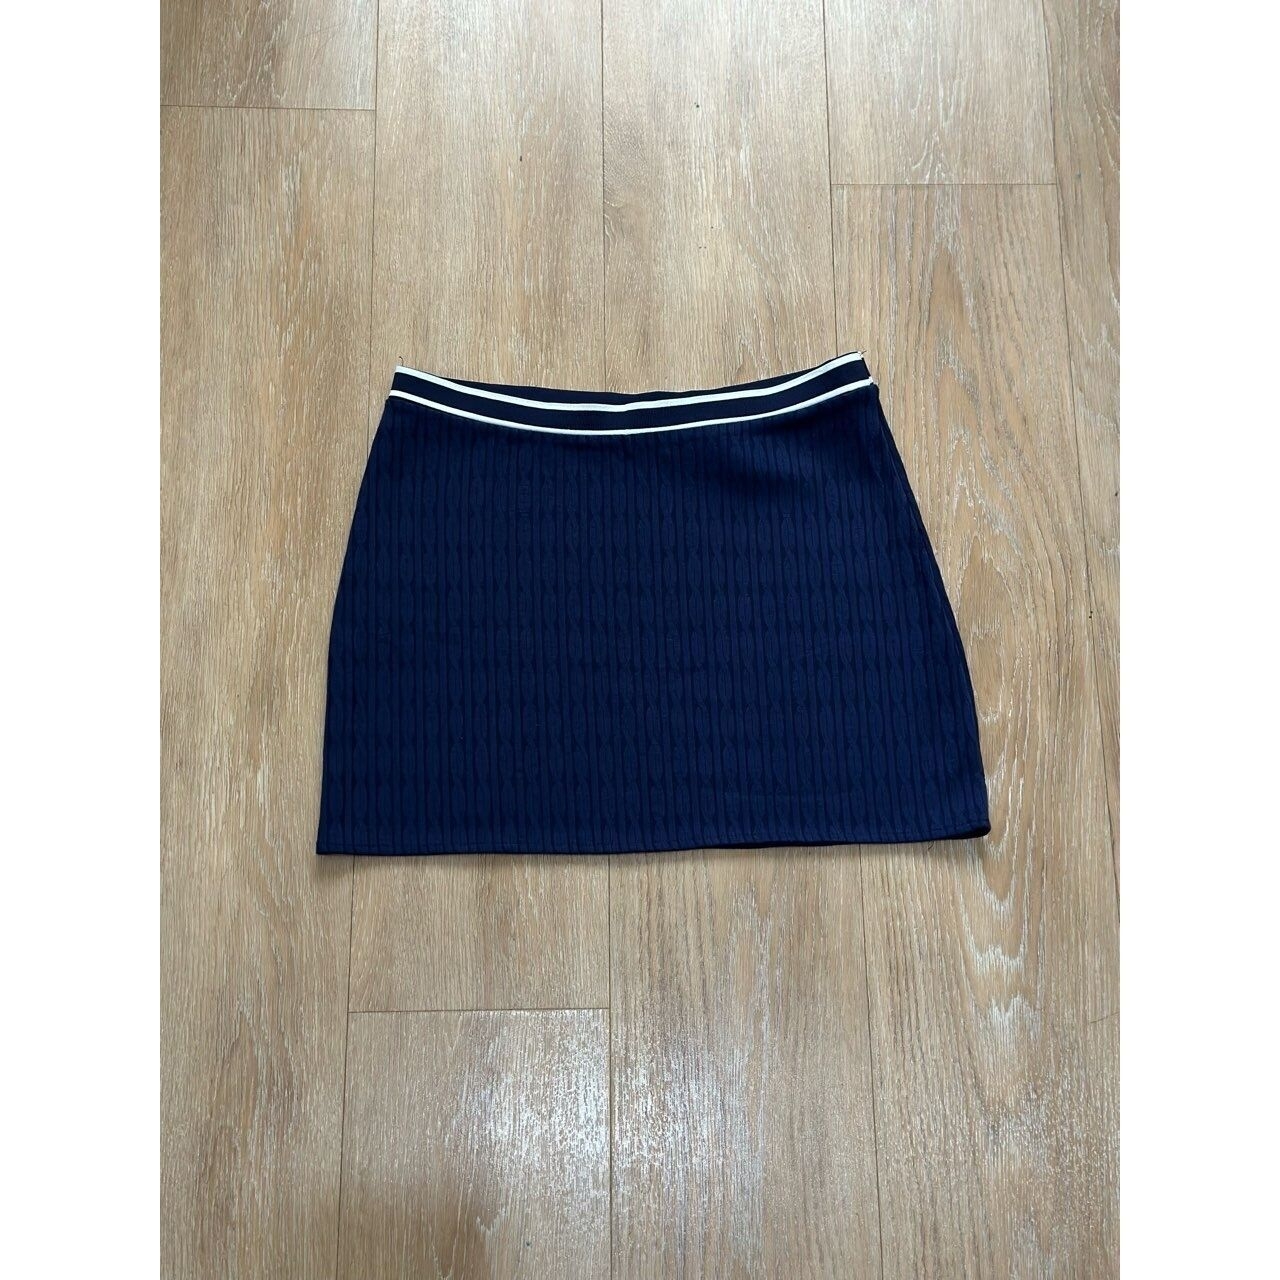 H&M Navy Mini Skirt